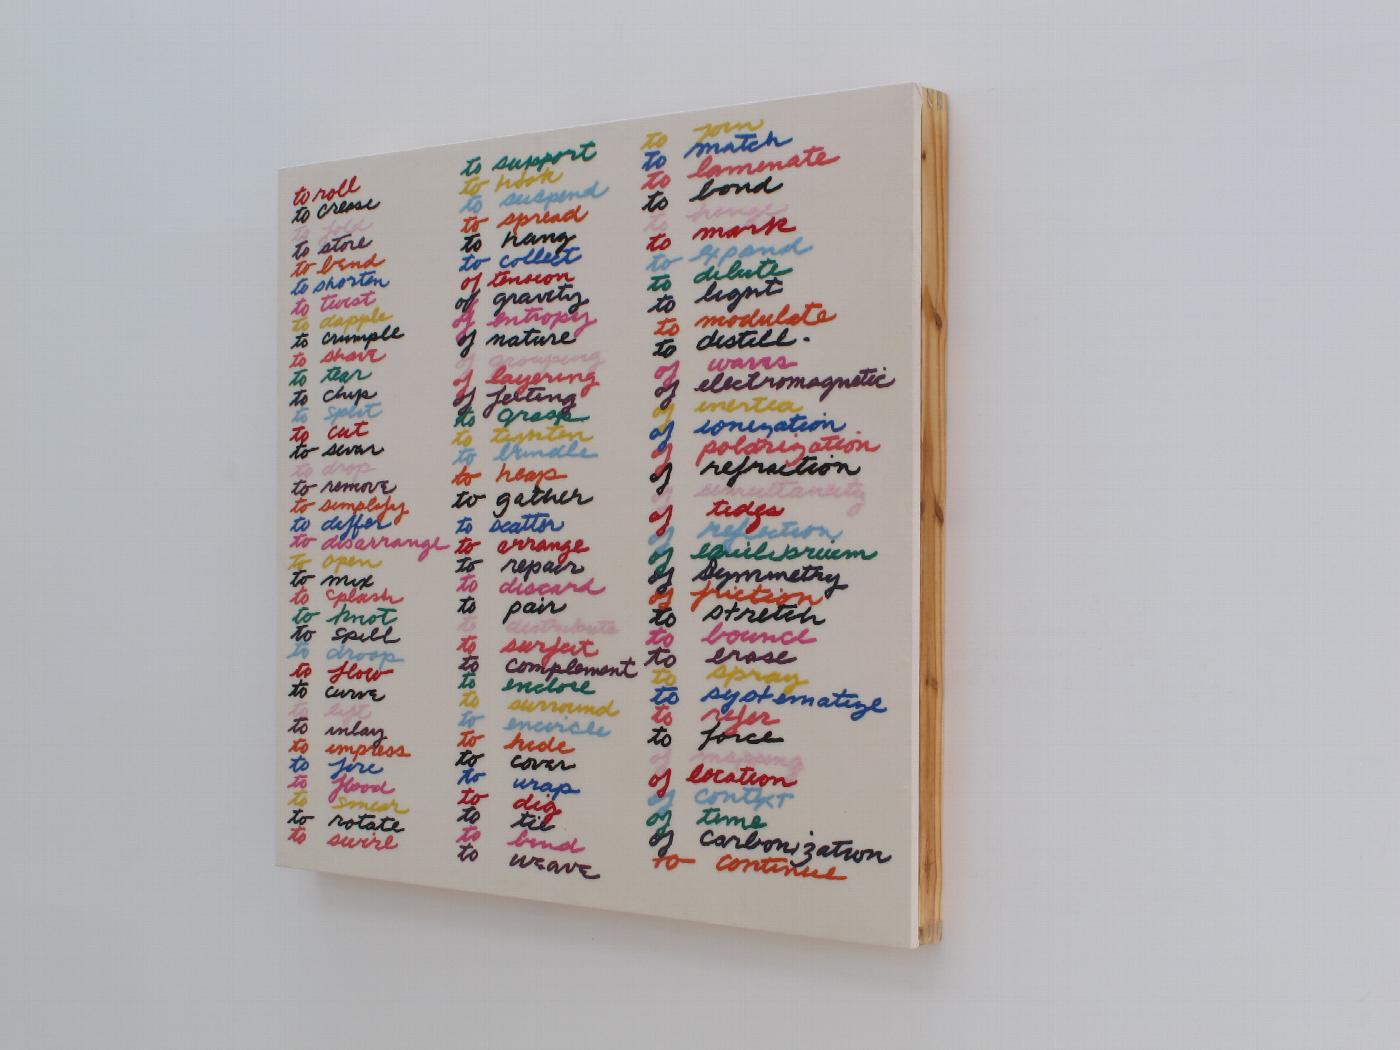 Escultura de Carmen Marcos, un bordado sobre algodón montado en bastidor de madera (2010-2012), que reproduce el listado de verbos de acción relacionados con la escultura manuscrito por Richard Serra en 1968